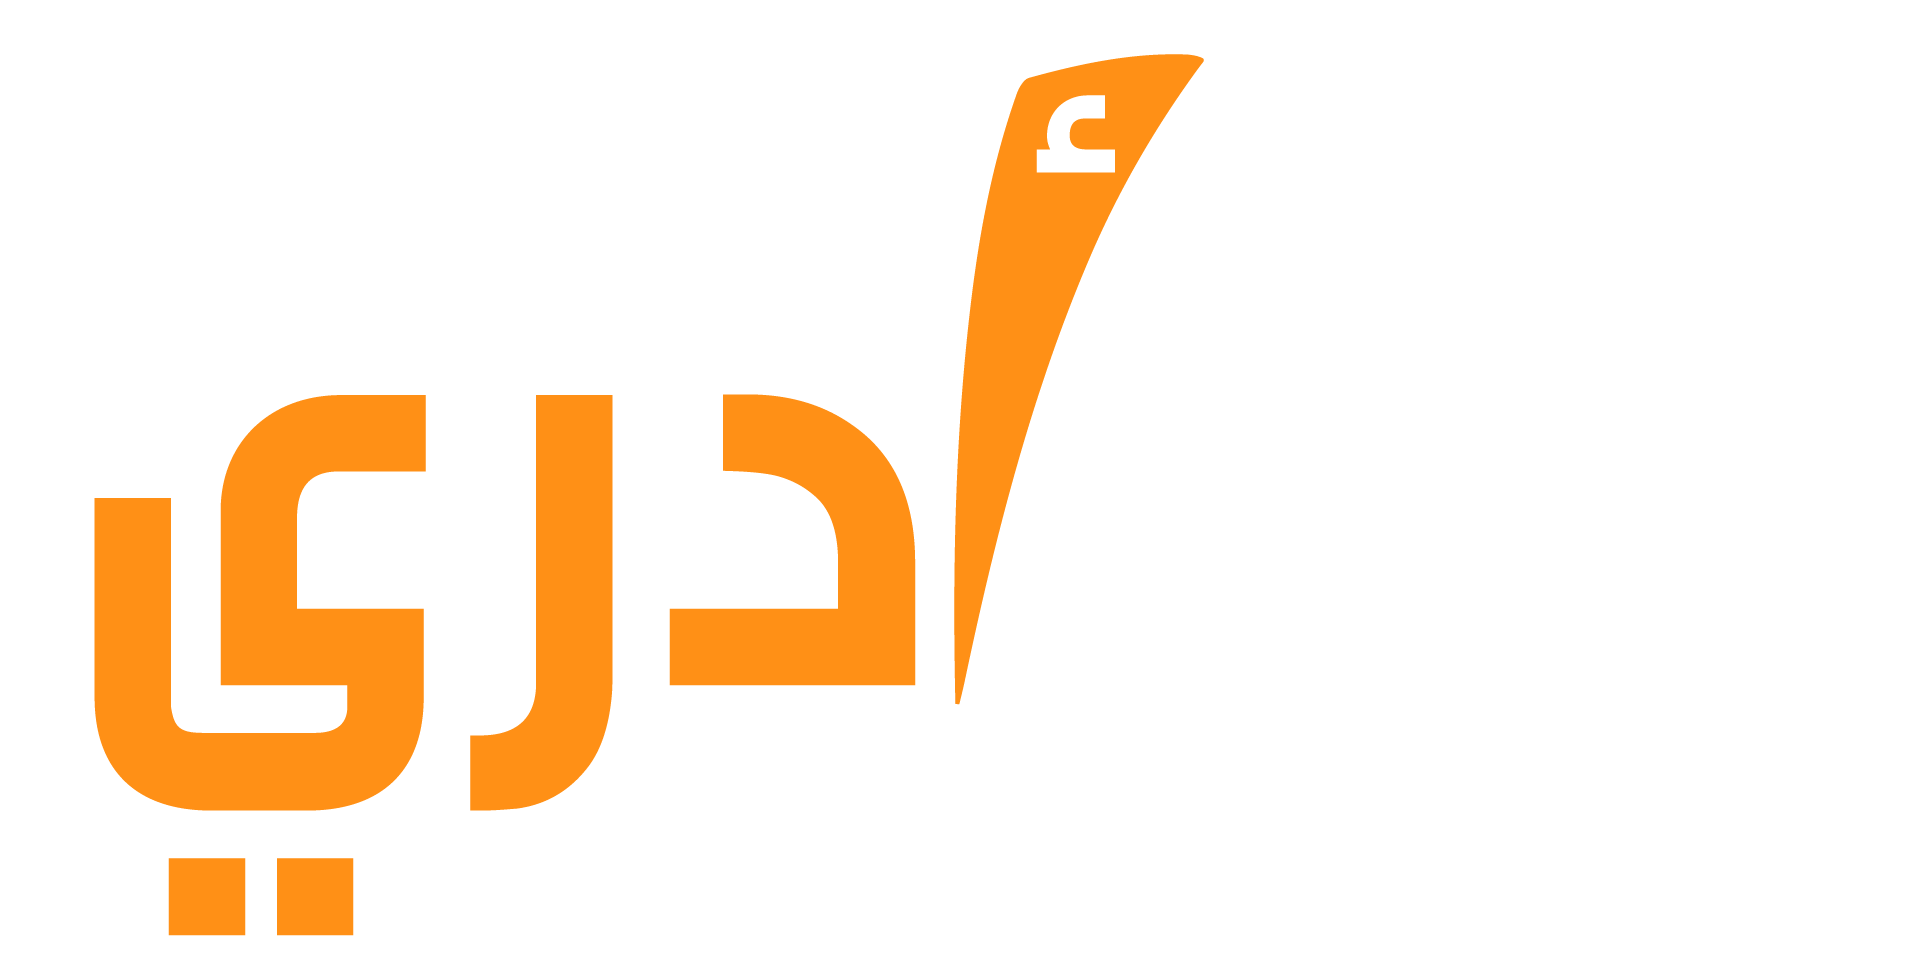 ADRI - Arabic Digital Reform Institute